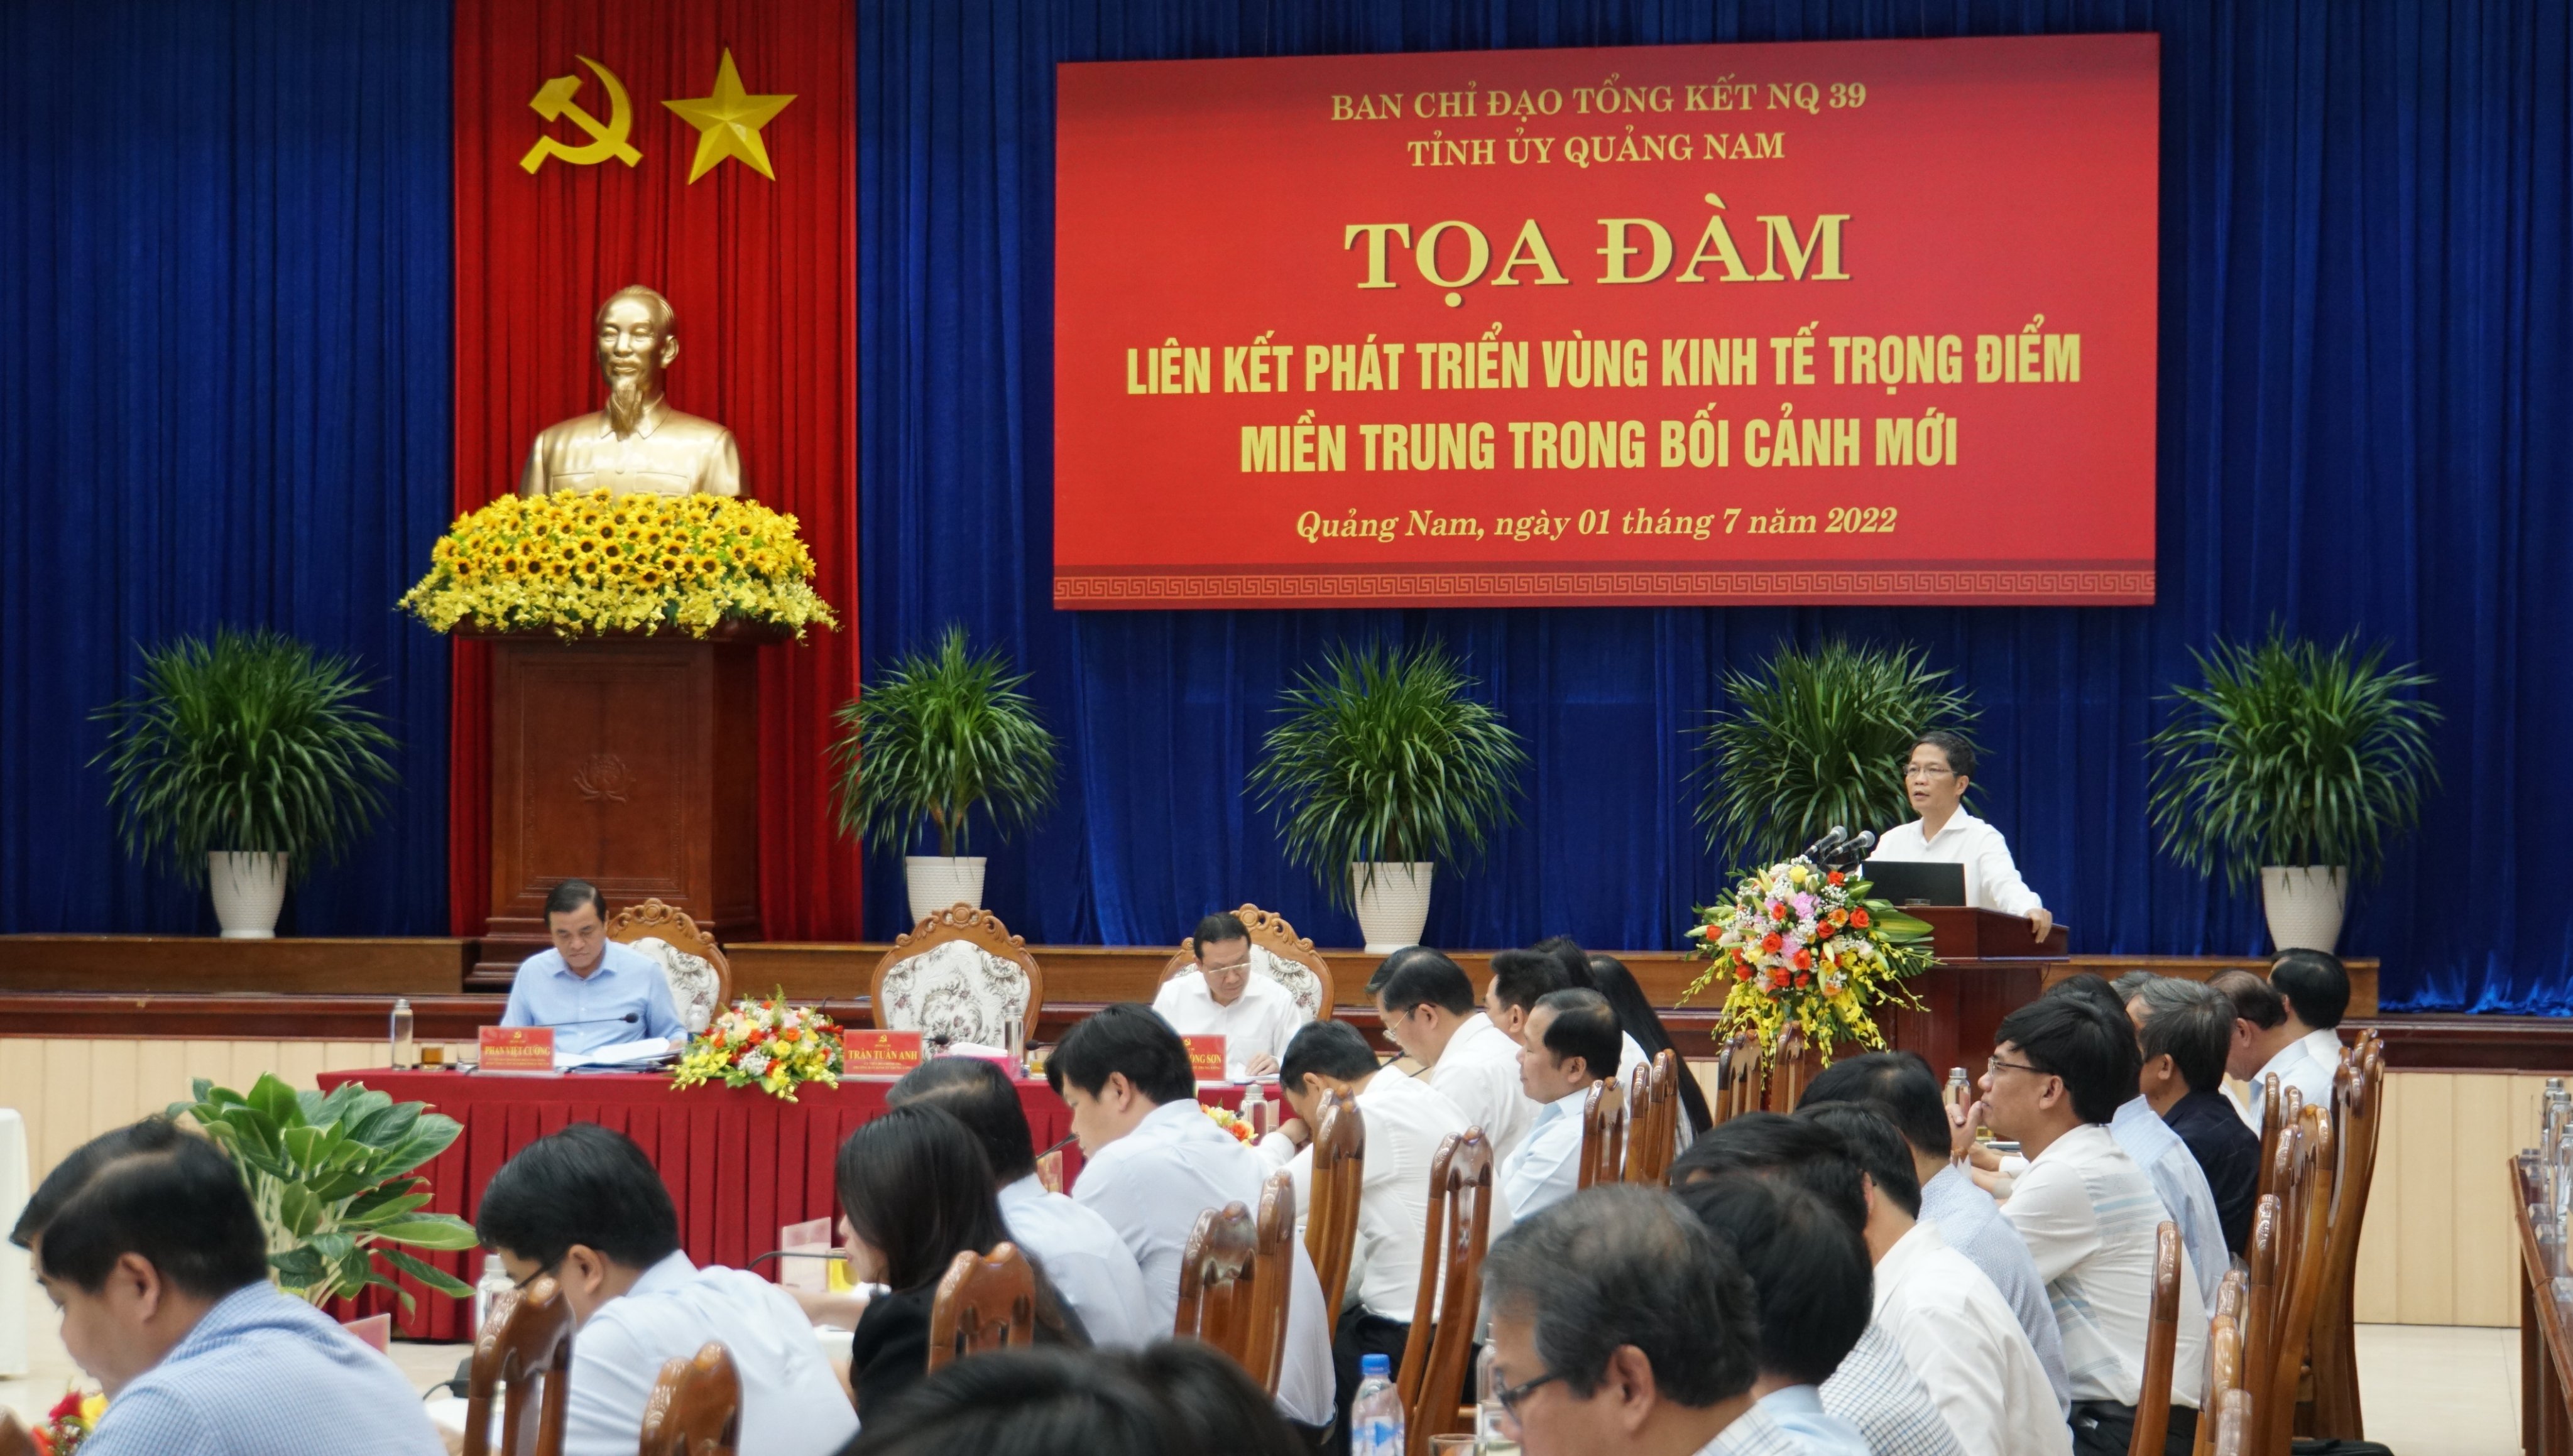 Tọa đàm Khoa học “Liên kết phát triển Vùng Kinh tế trọng điểm miền Trung trong bối cảnh mới” tổ chức tại Quảng Nam